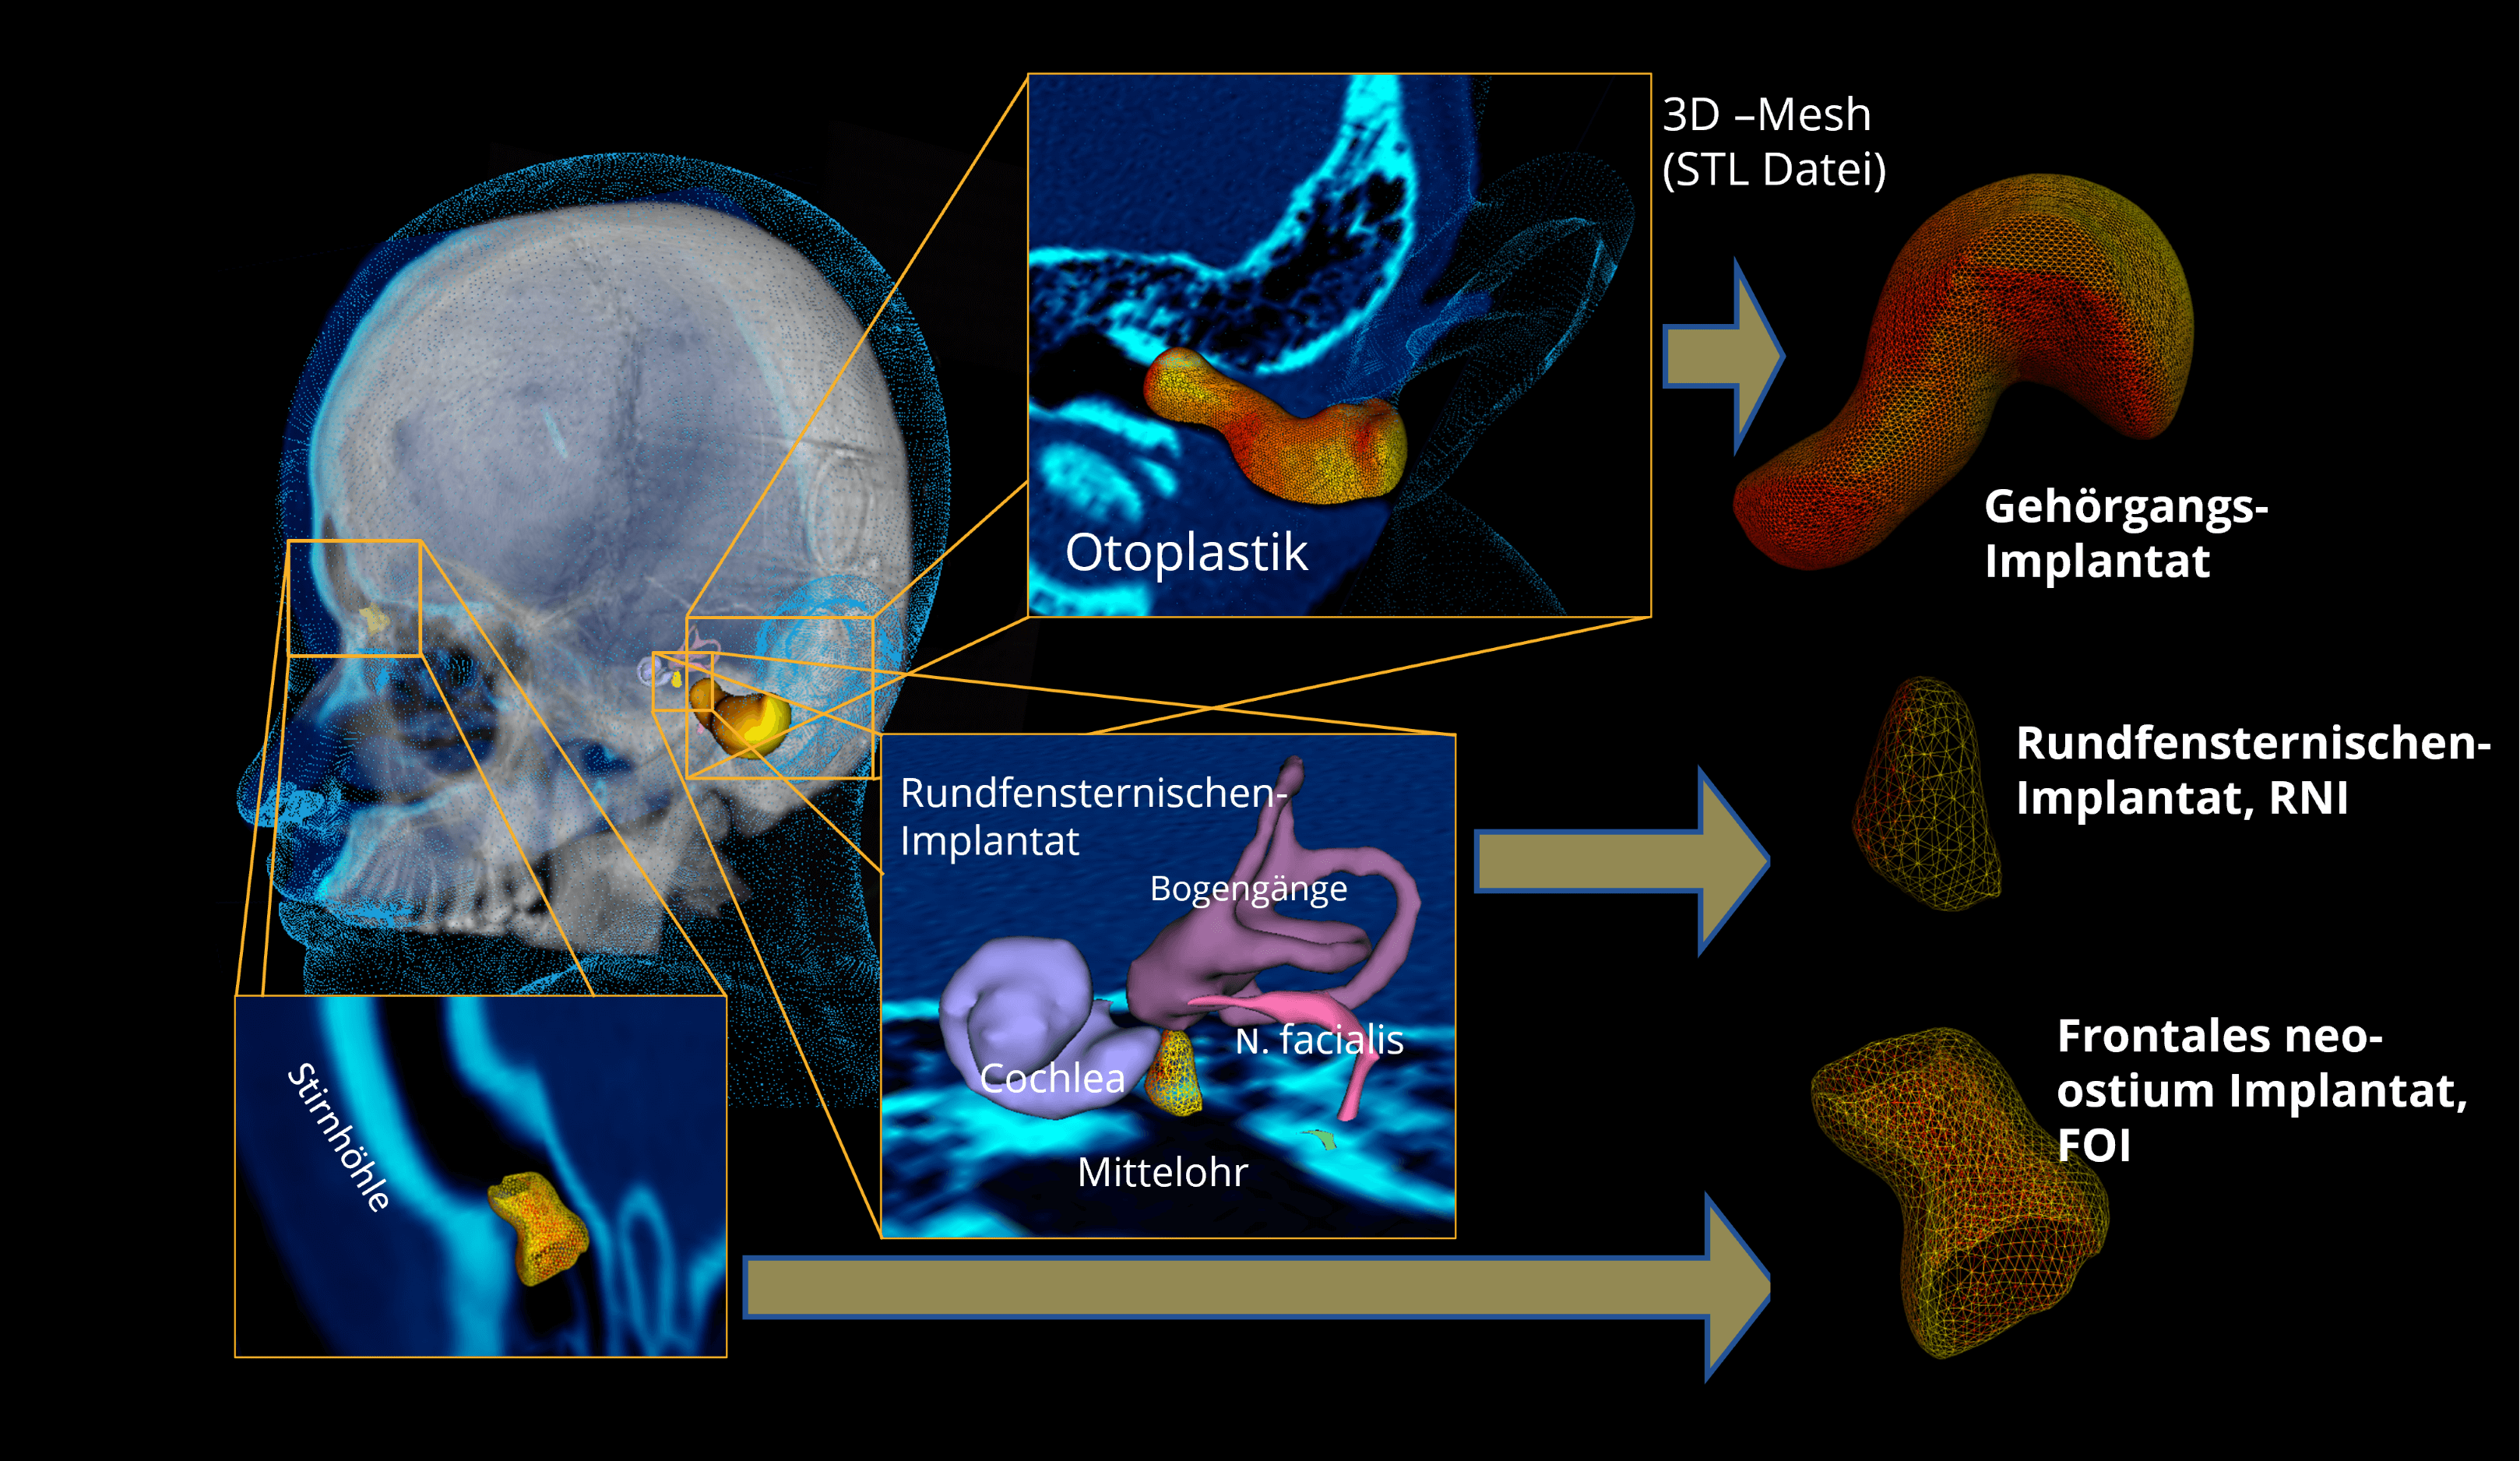 Grafik zu verschiedenen HNO Implantaten. Zu sehen ist ein Schädel mit drei 3D Mesh Darstellungen von Implantaten. Ein frontales neo-ostium Implantat (FOI) in der Stirnhöhle. Ein Rundfensternischenimplantat (RNI) im Mittelohr. Und ein Gehörgangsimplantat im Gehörgang.